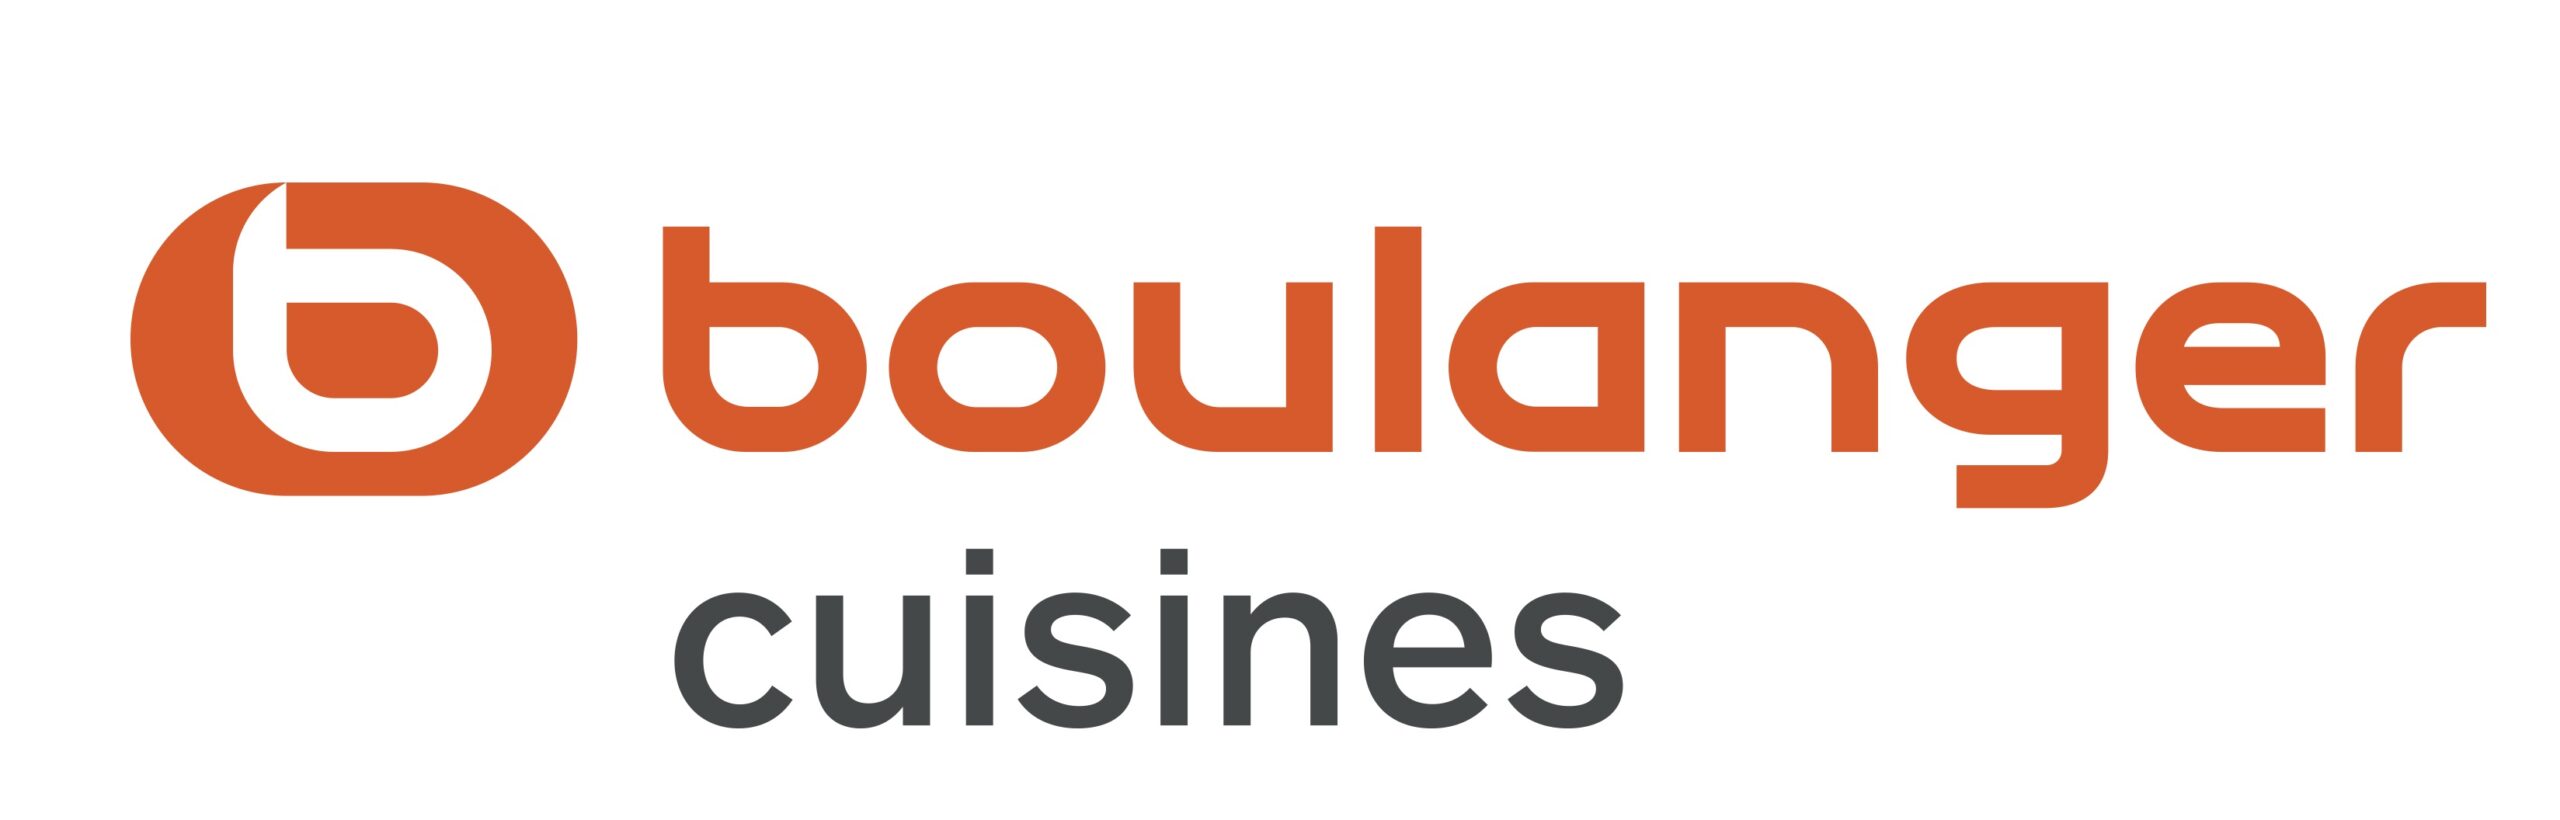 logo Boulanger cuisines